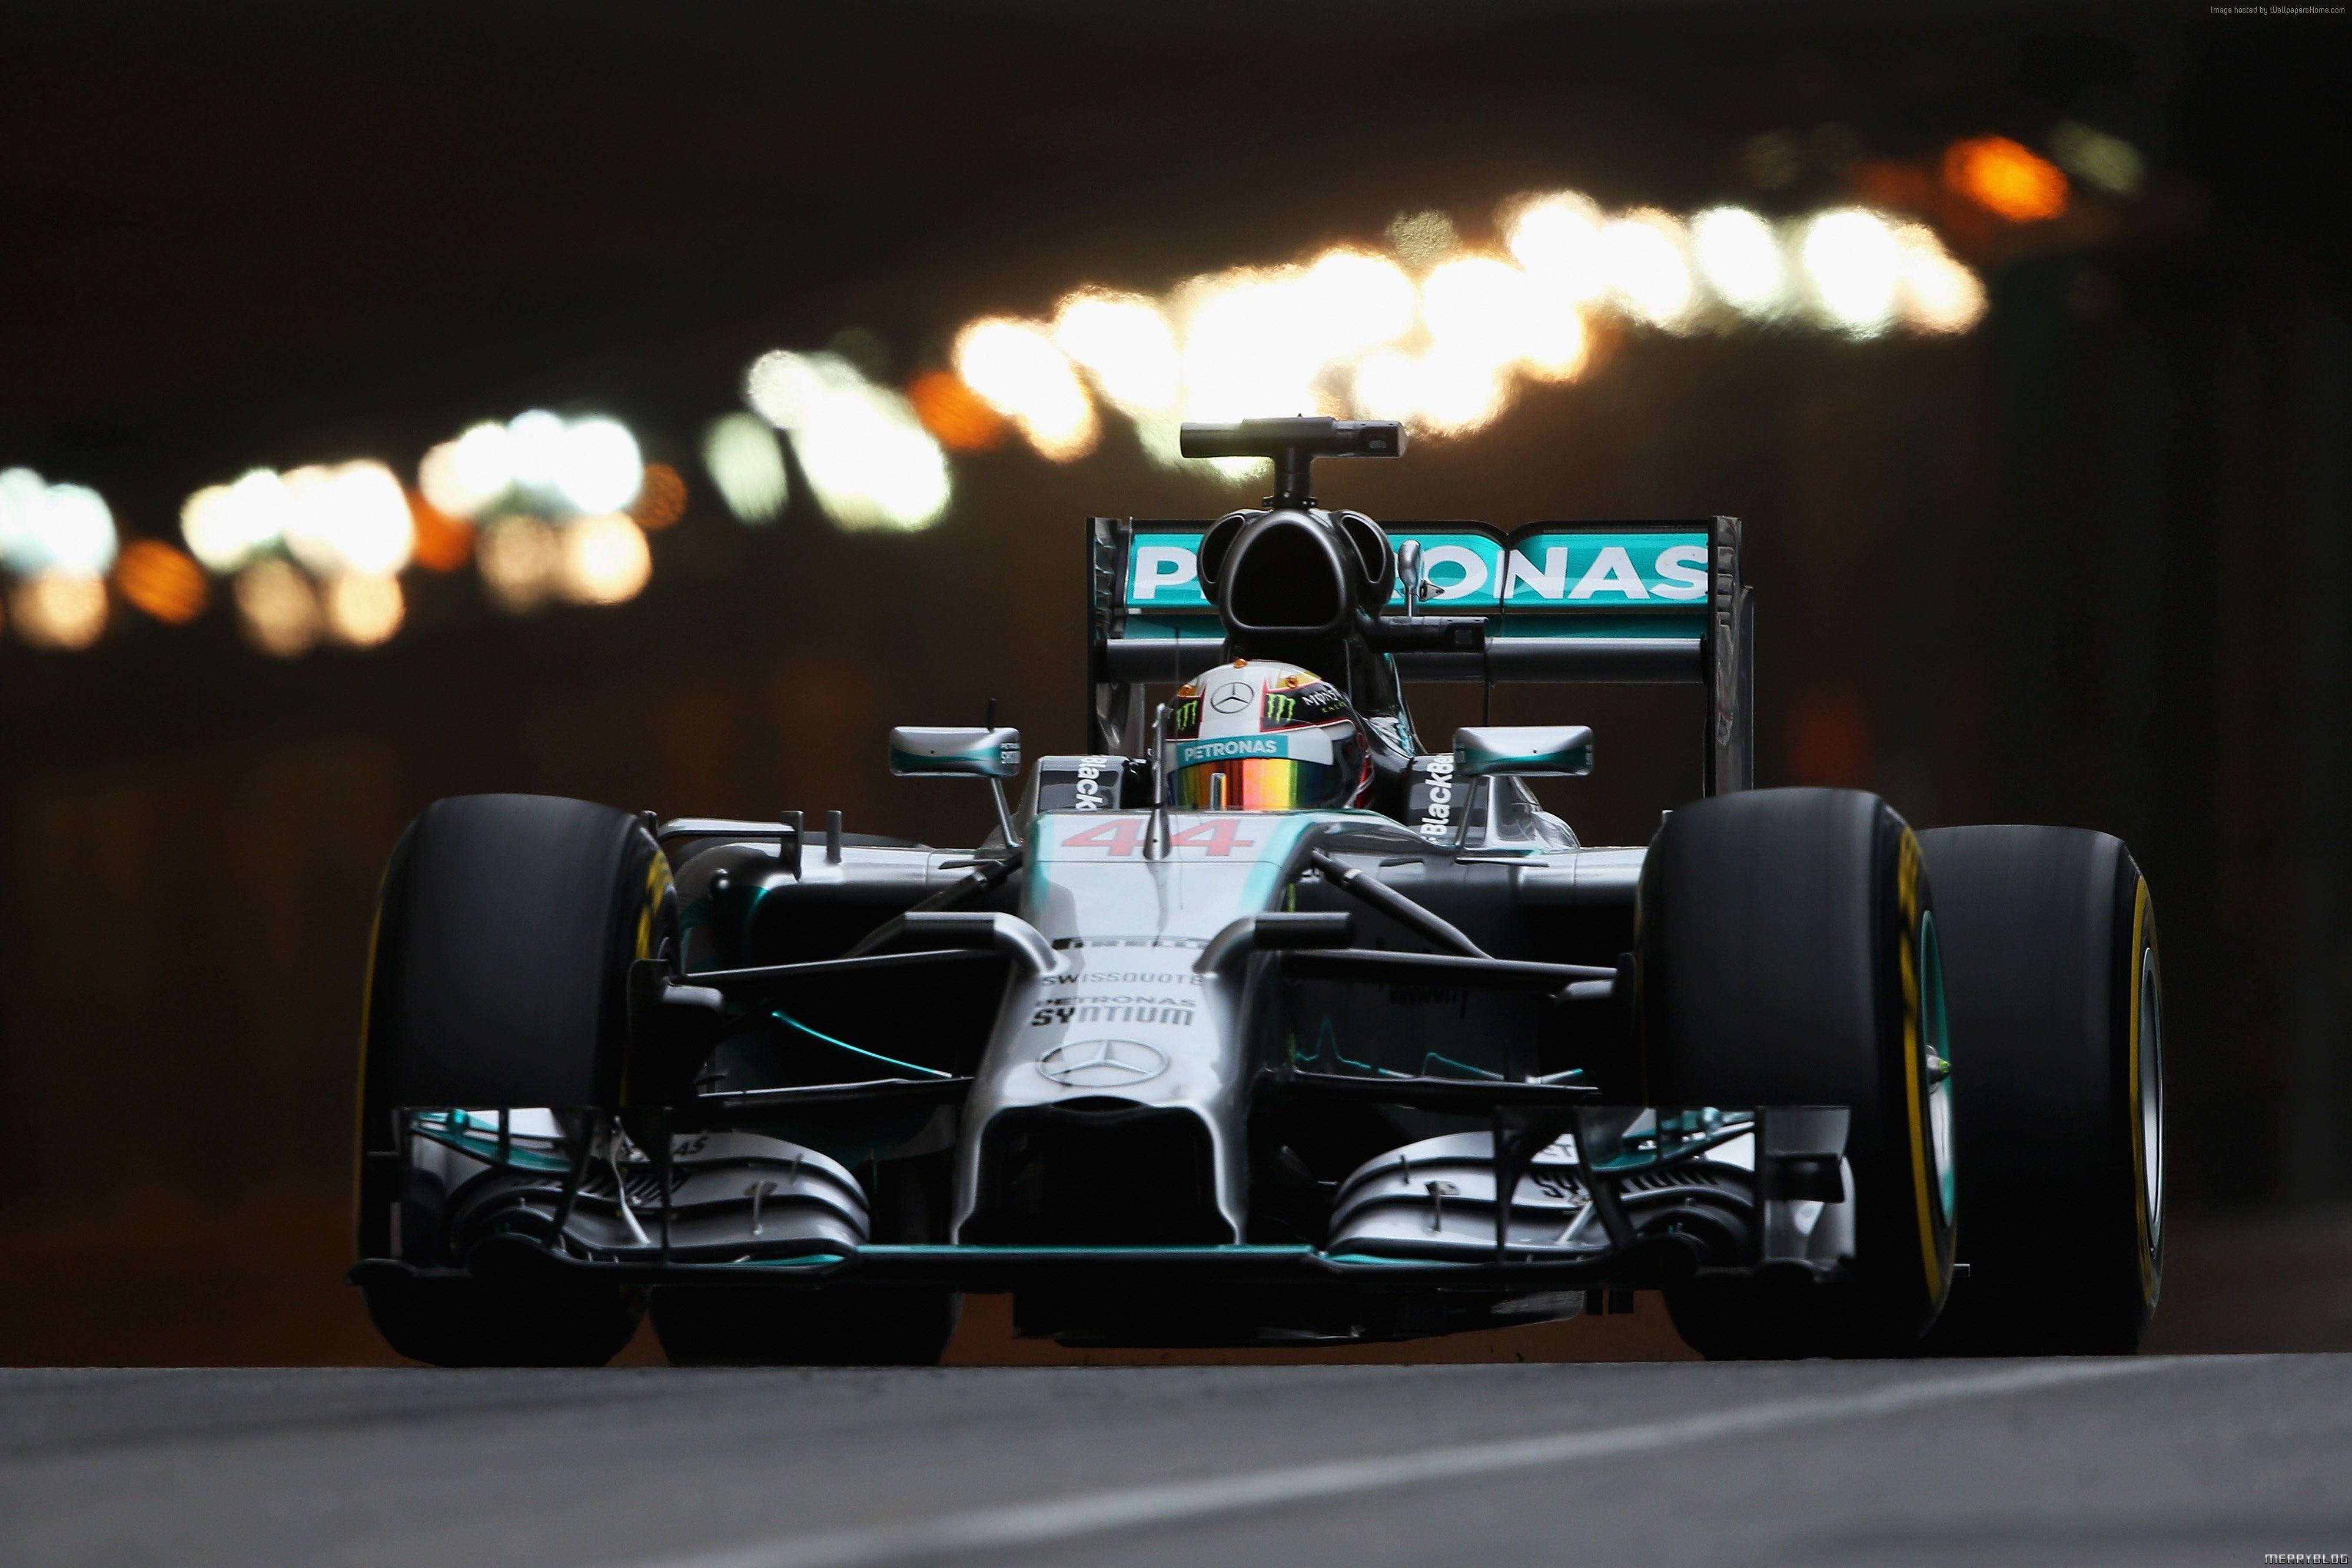 Lewis Hamilton Formula 1 #racing Sports Car #helmet #Mercedes Benz #F1 #specs K #wallpaper #hdwallpaper #desk. Mercedes Wallpaper, Mercedes Benz, Lewis Hamilton